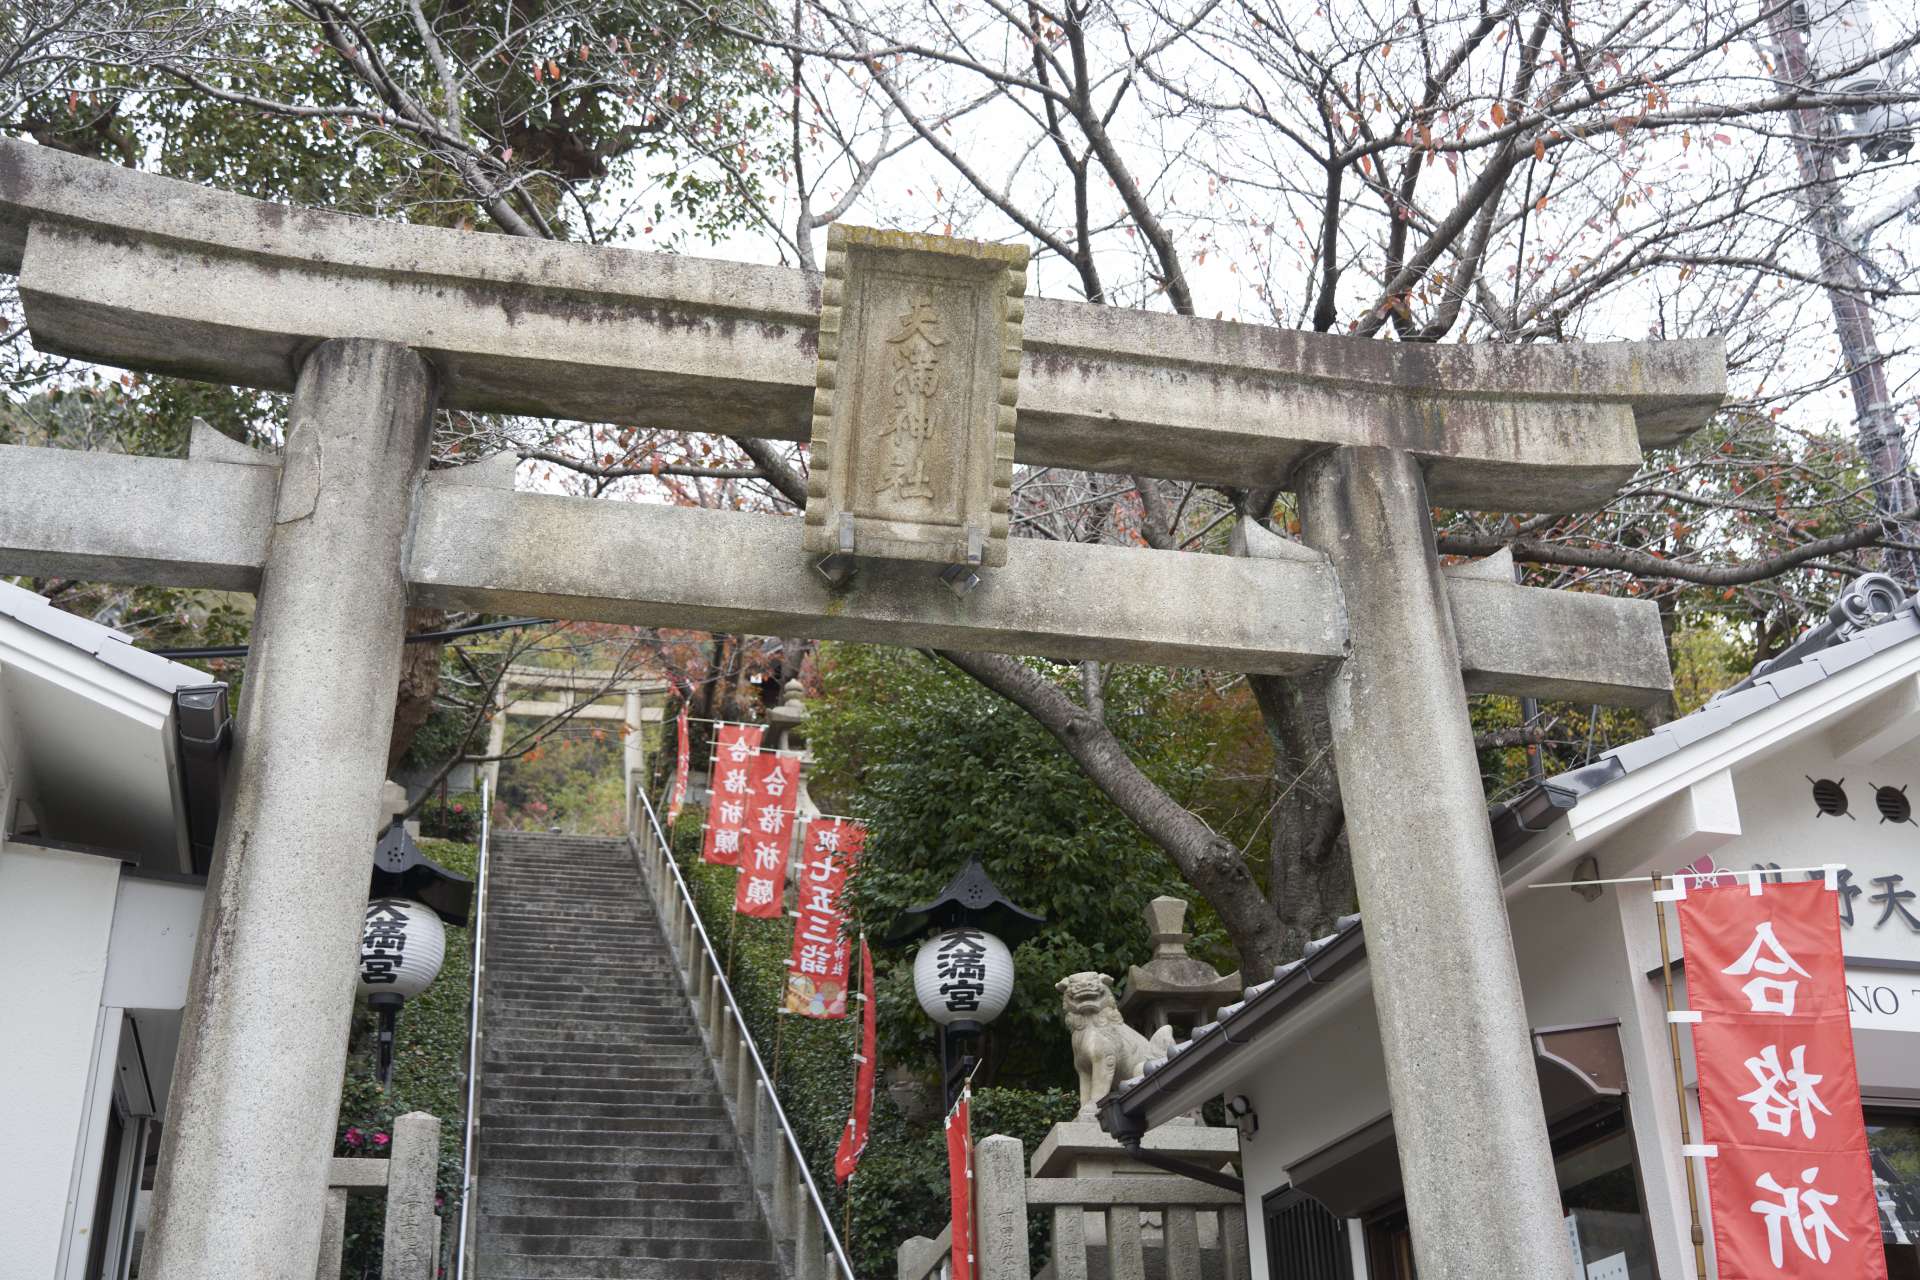 Han pasado más de 840 años desde que Taira no Kiyomori fundó el santuario. Sigue vigilando la ciudad de Kobe desde la colina.